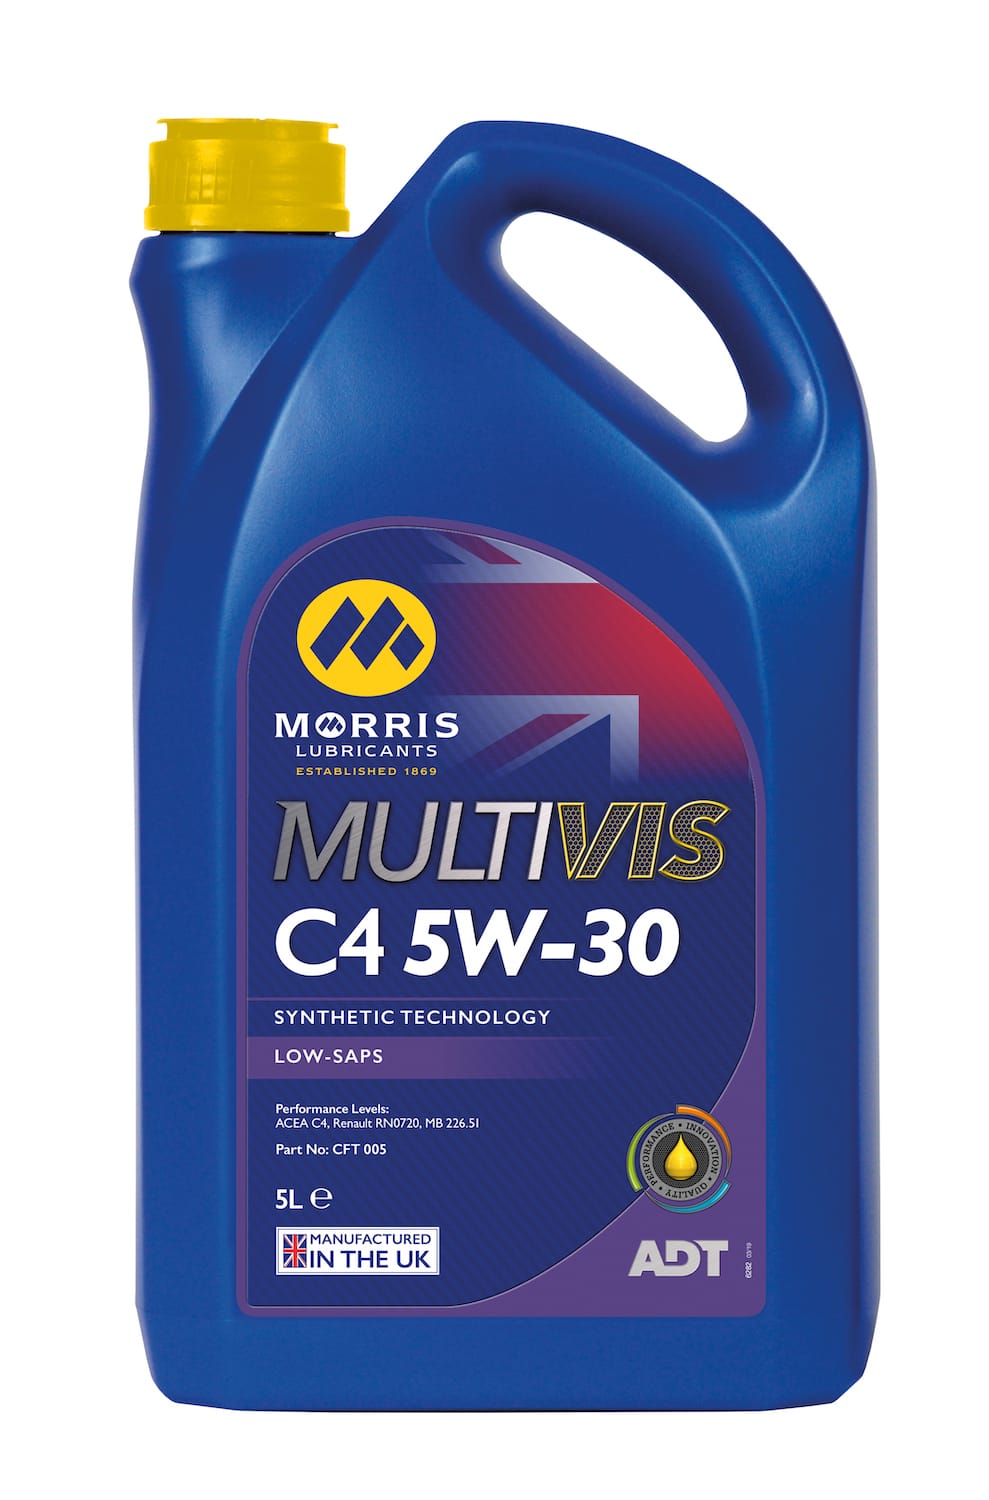 Multivis ADT C4 5W-30 